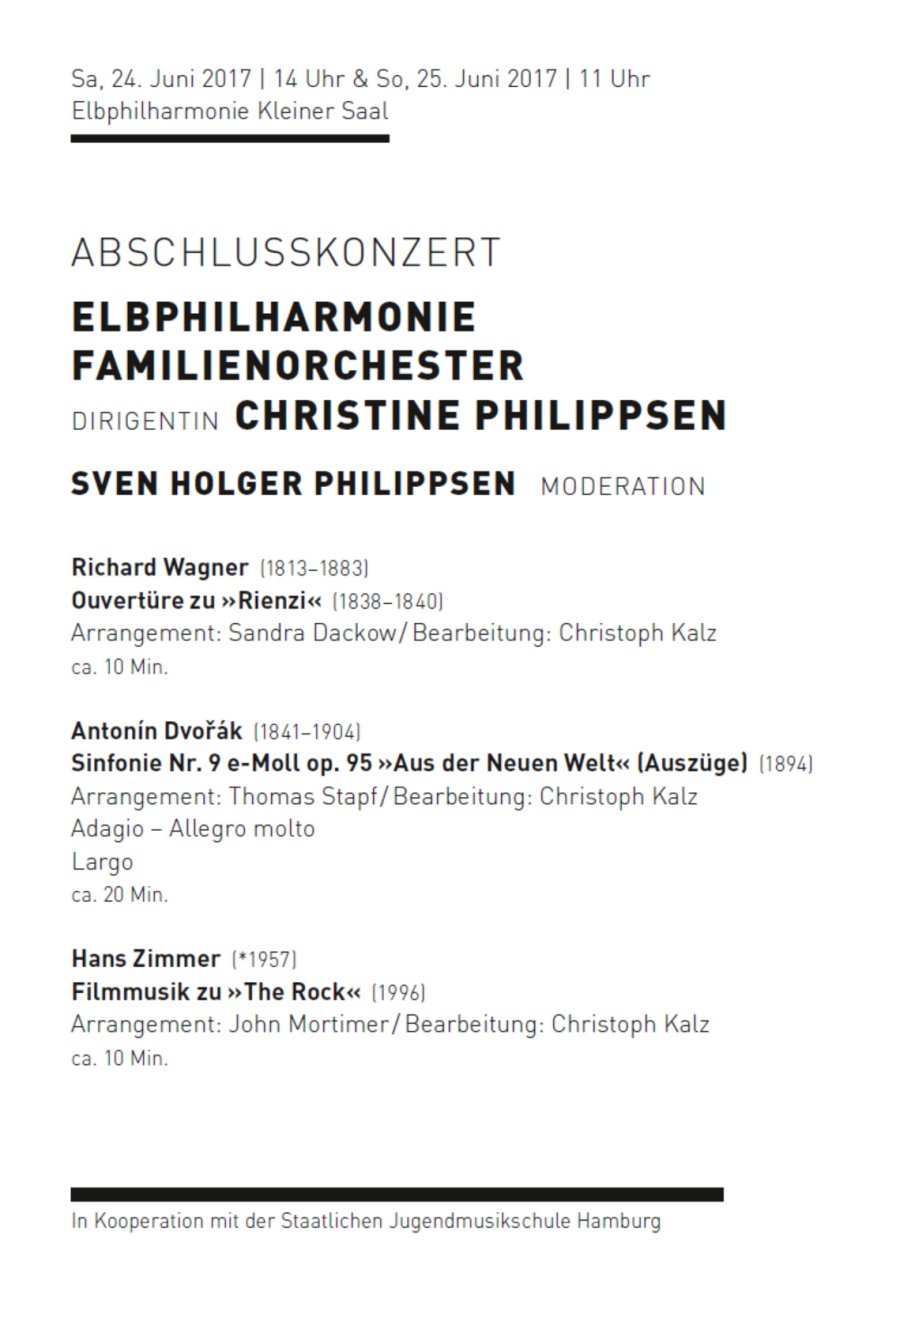 24. und 25.06.2017: Das Familienorchester der Elbphilharmonie